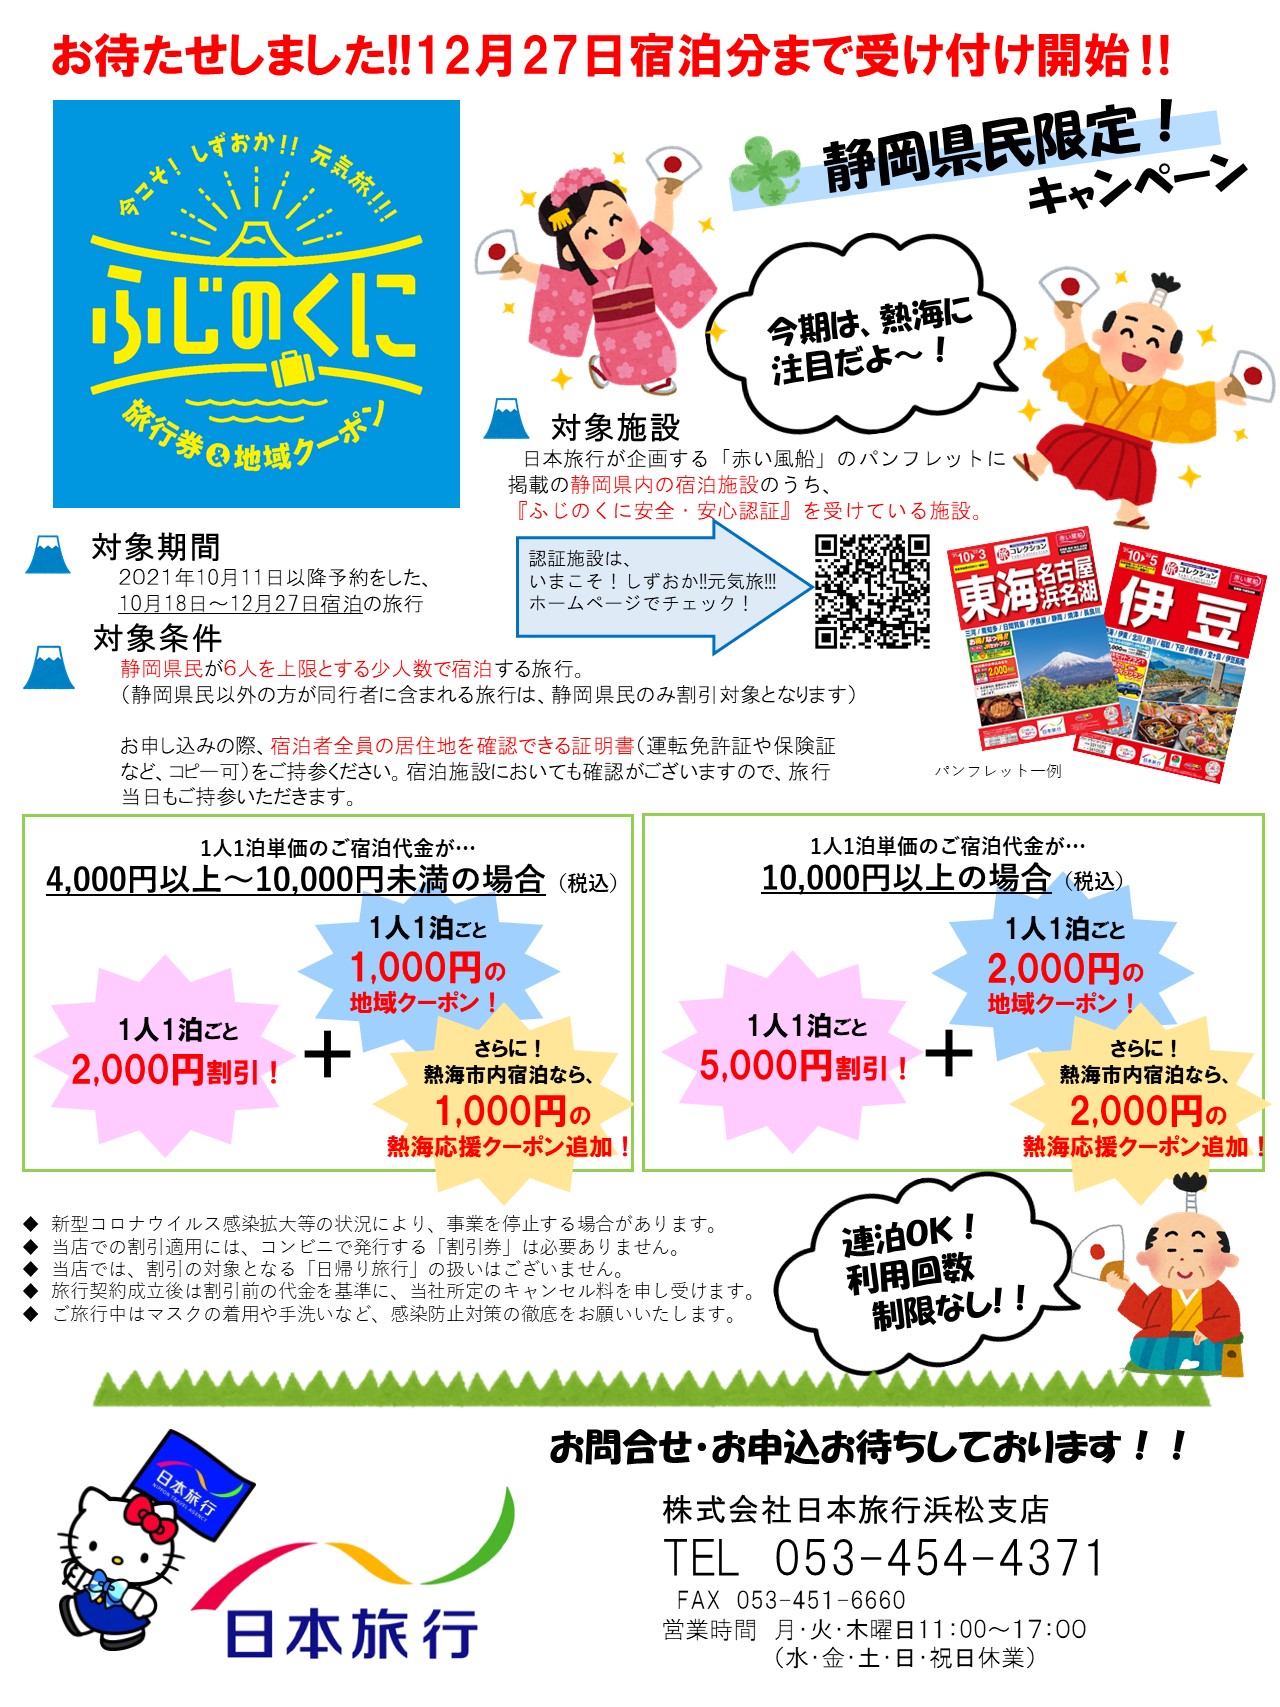 日本旅行 浜松支店のページ 日本旅行の国内旅行 海外旅行